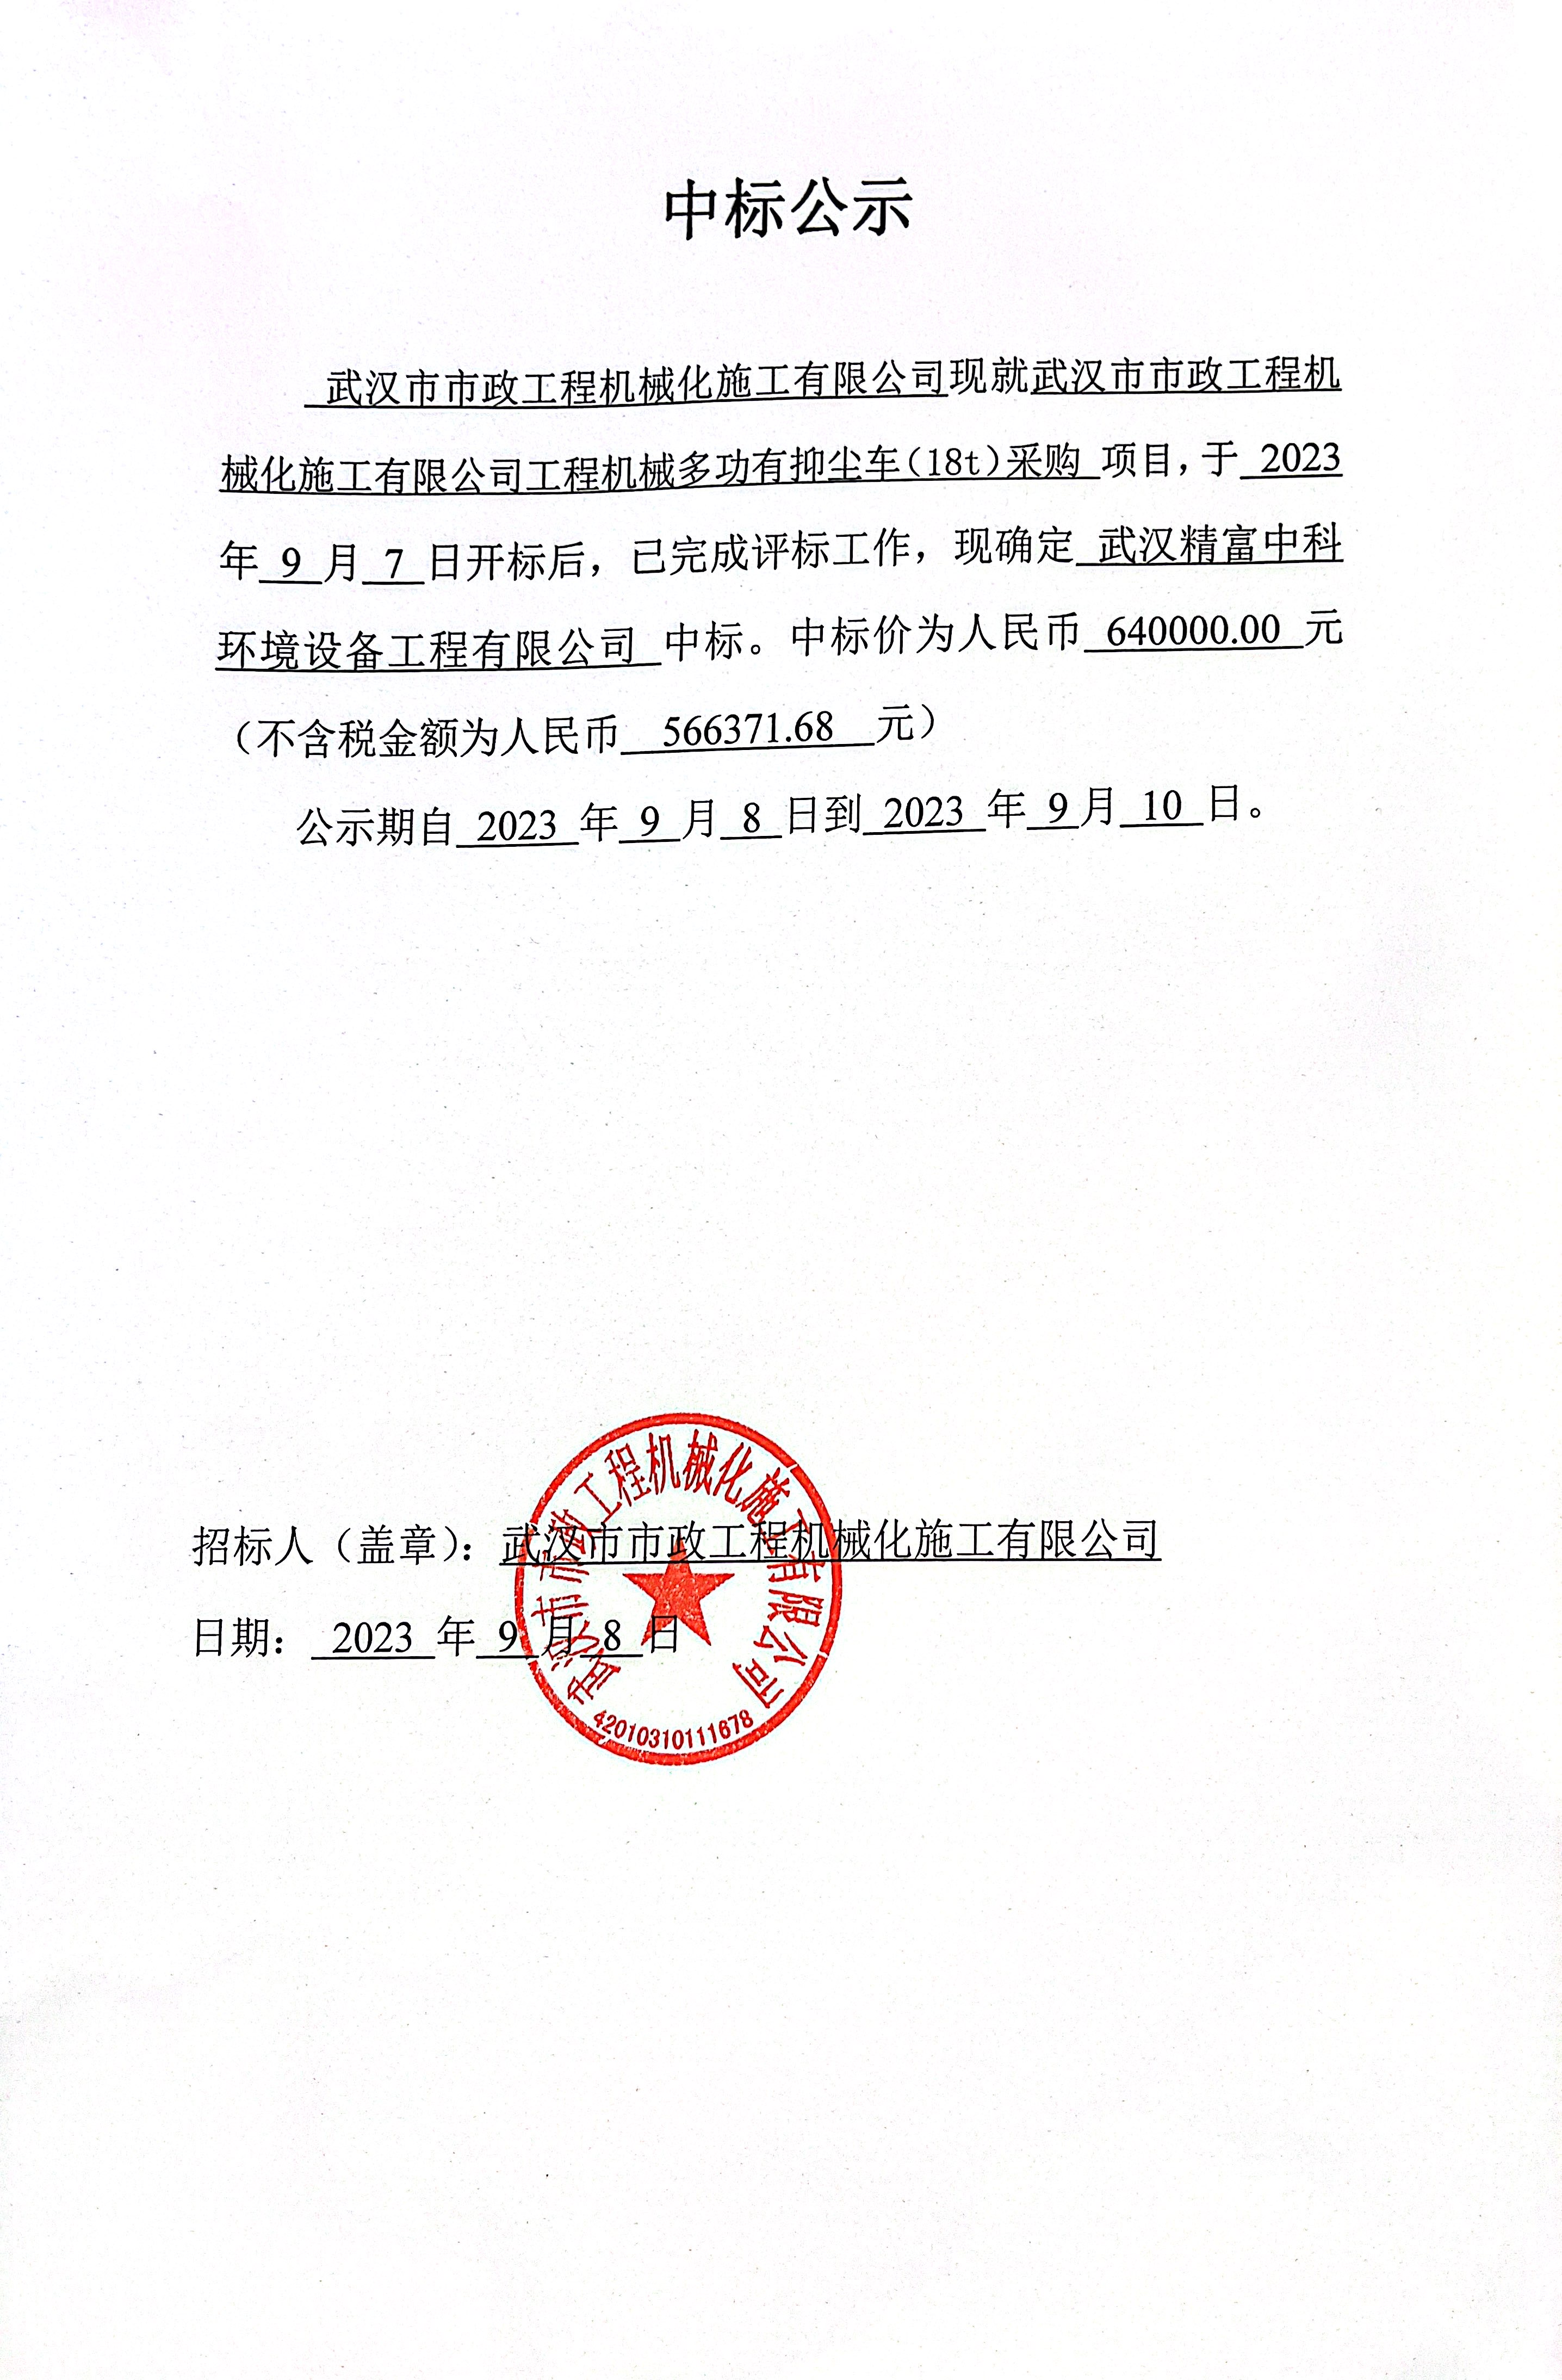  武漢市市政工程機械化施工有限公司工程機械多功能抑塵車（18t）采購 中標公示